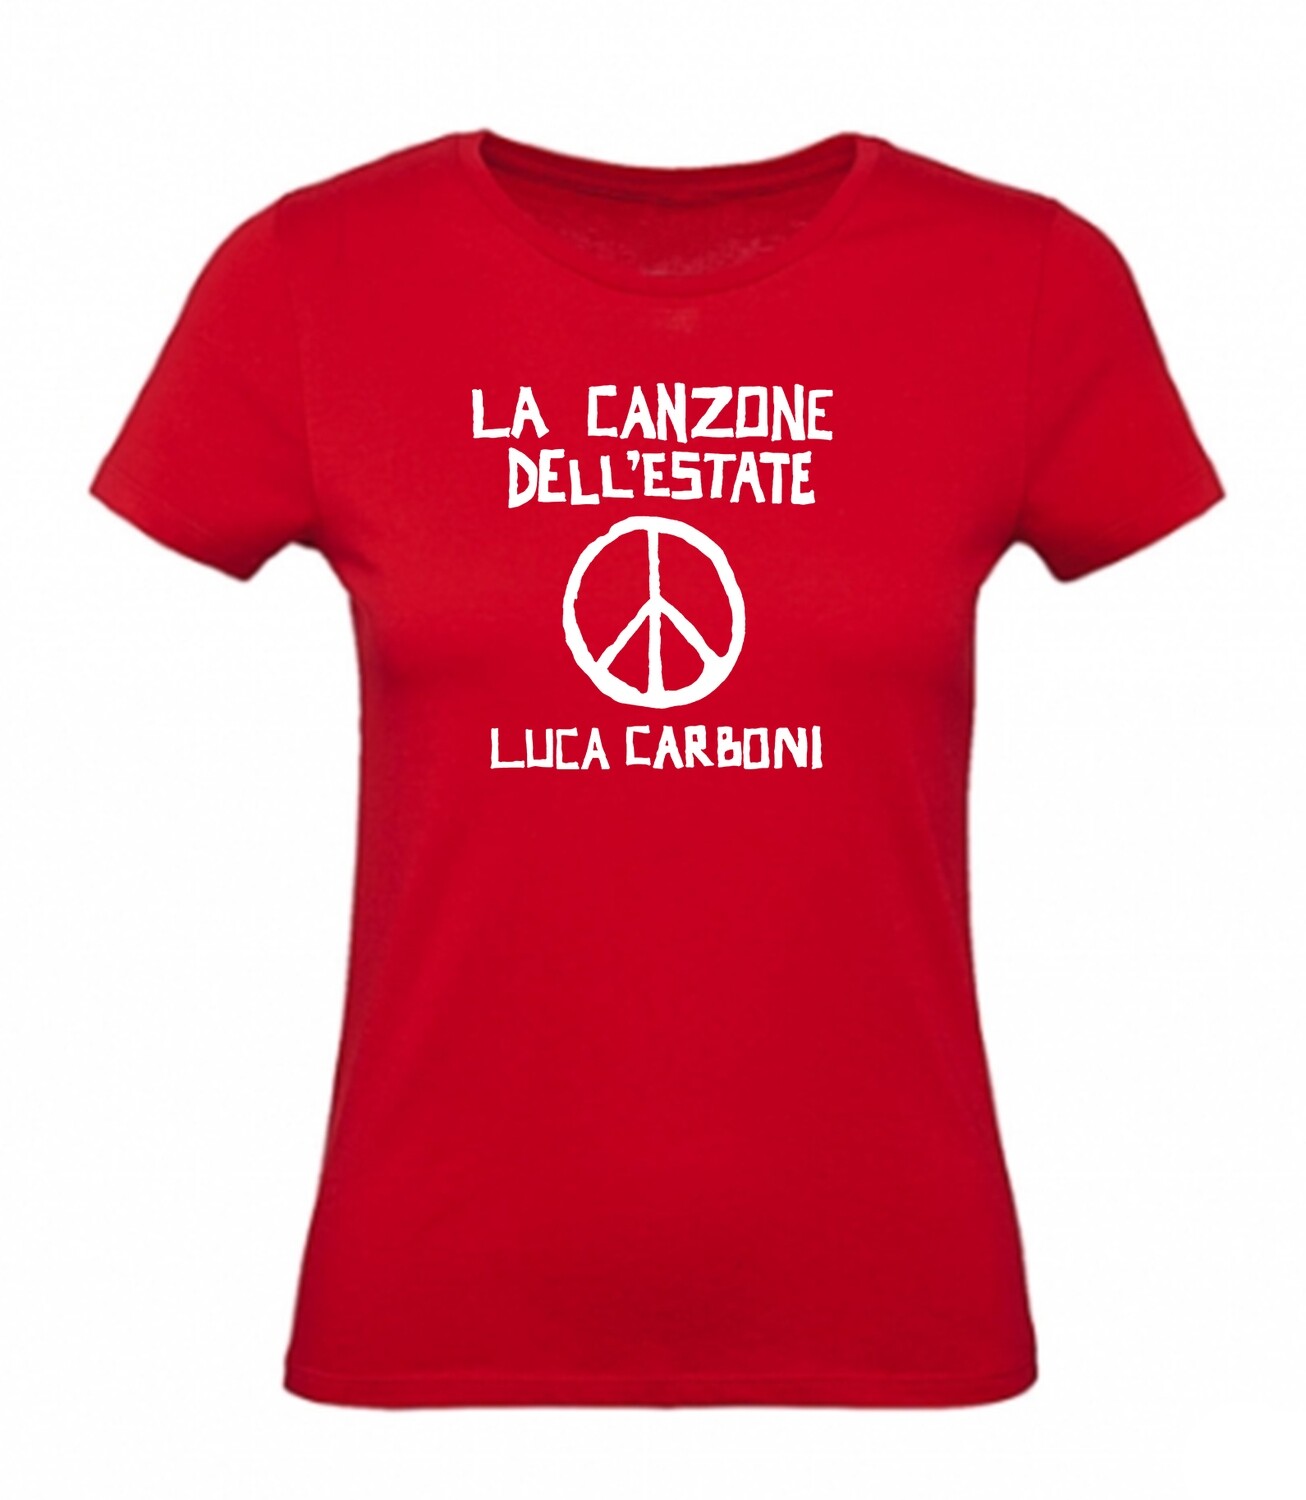 T-shirt ROSSA, DONNA "La Canzone dell'estate" - Luca Carboni